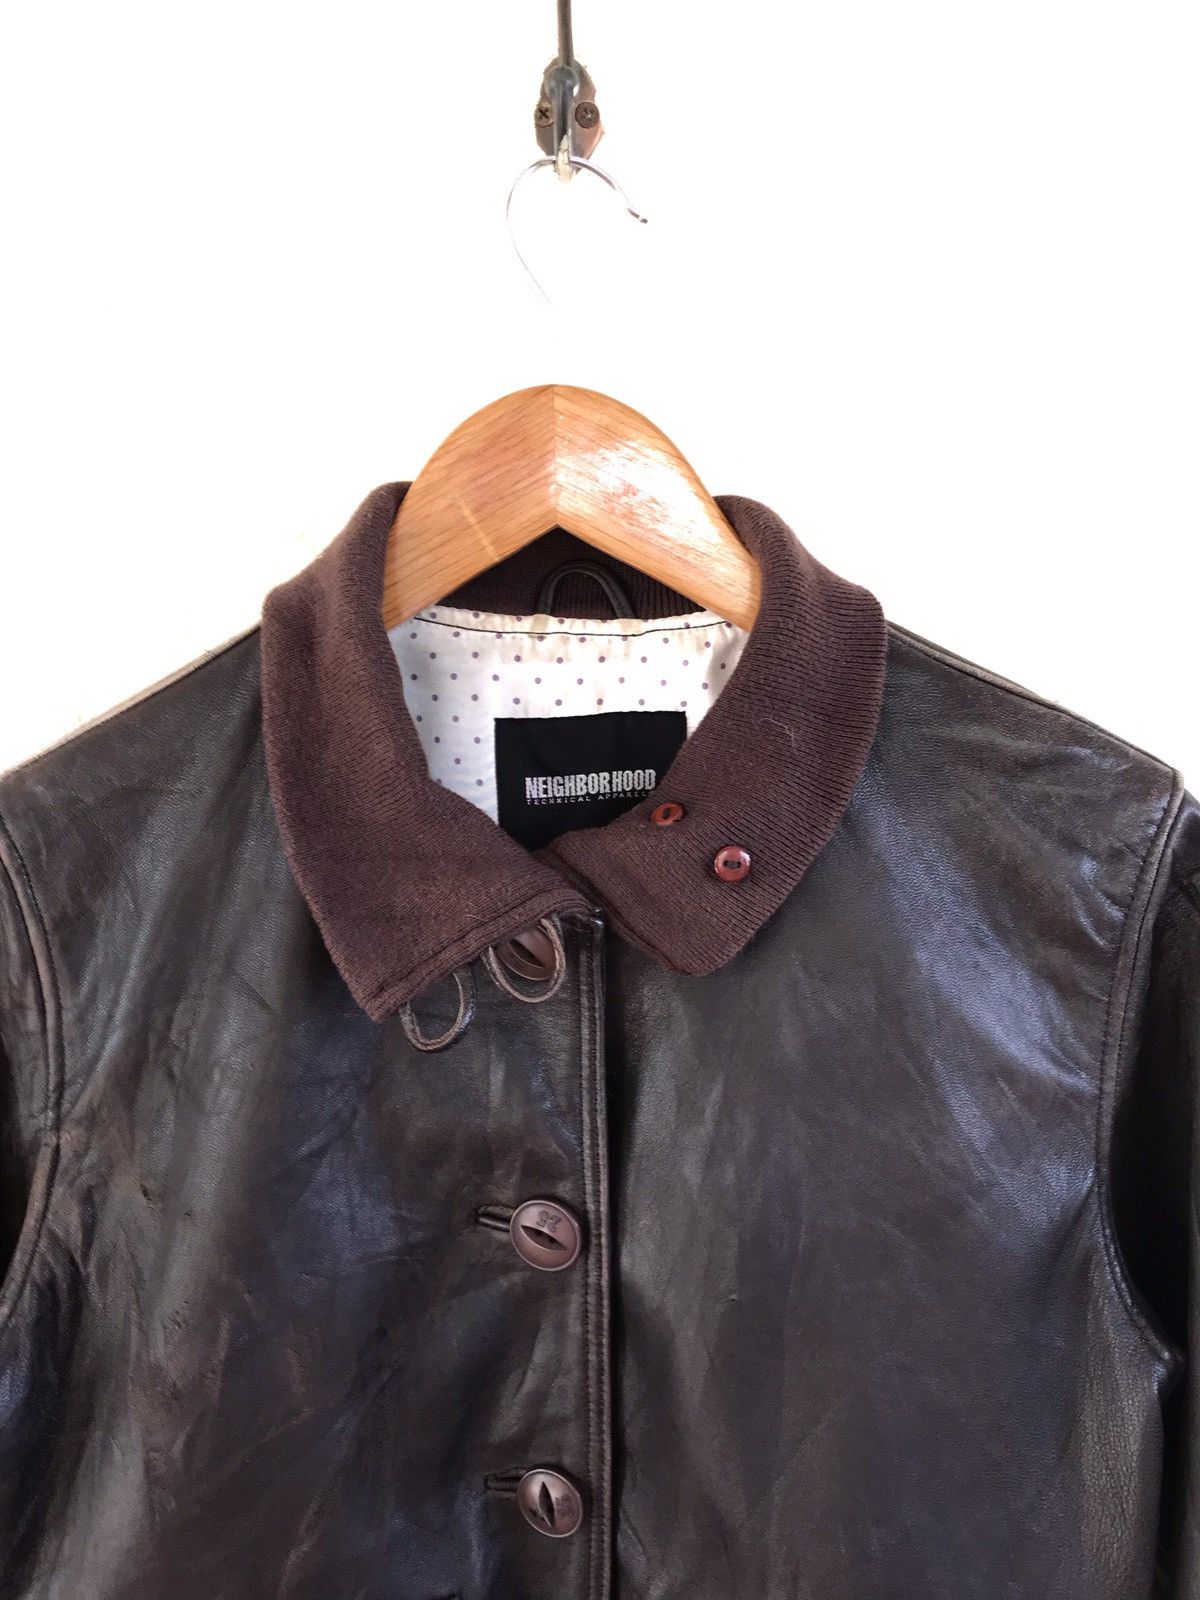 Neighborhood Leather Jacket - 2